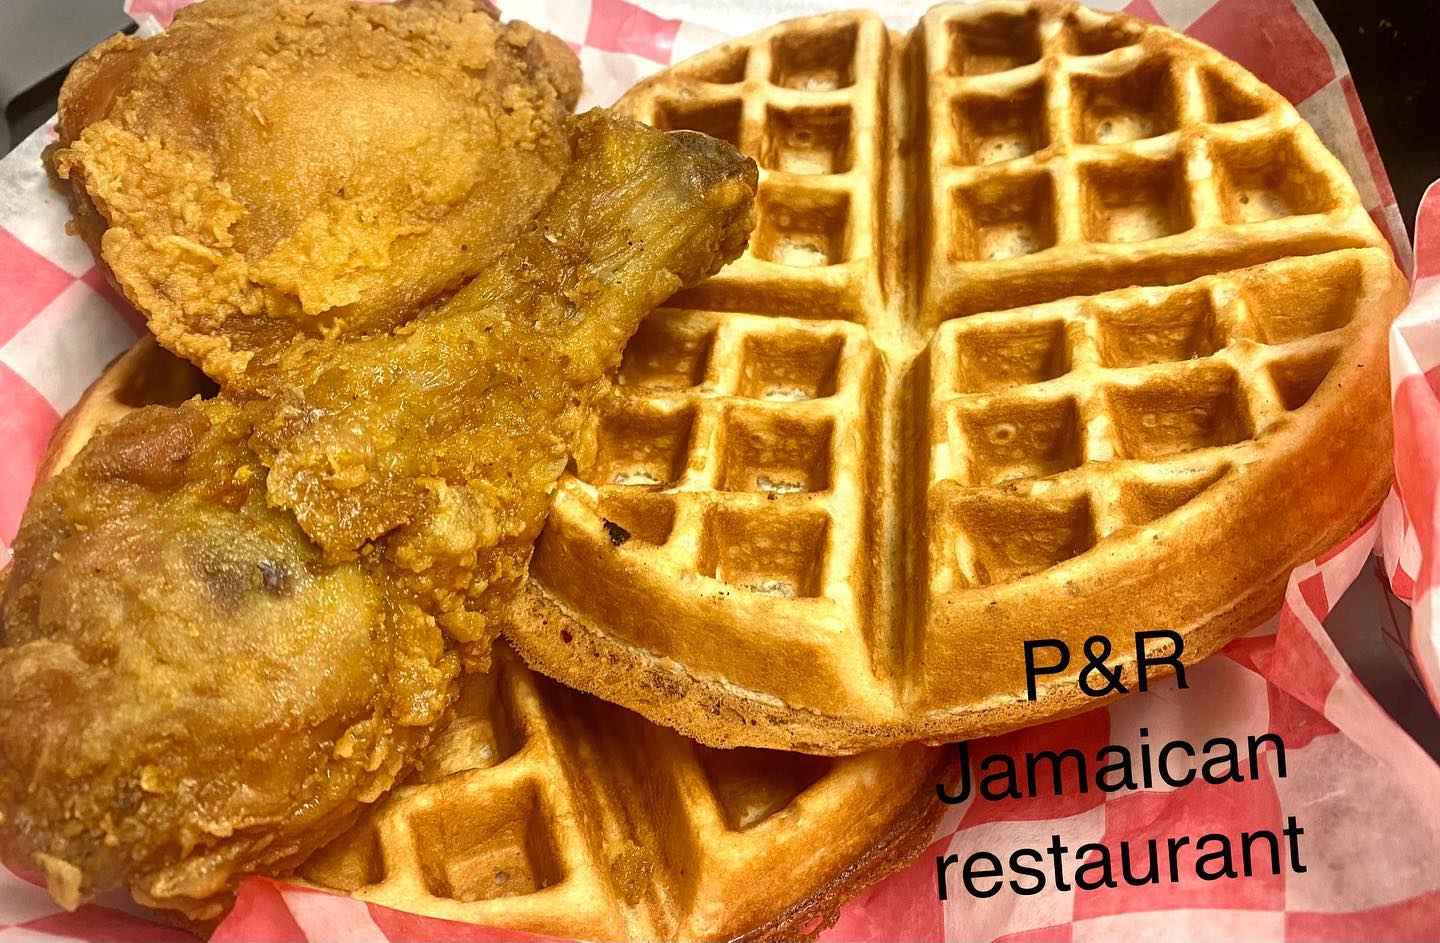 P&R Jamaican Restaurant